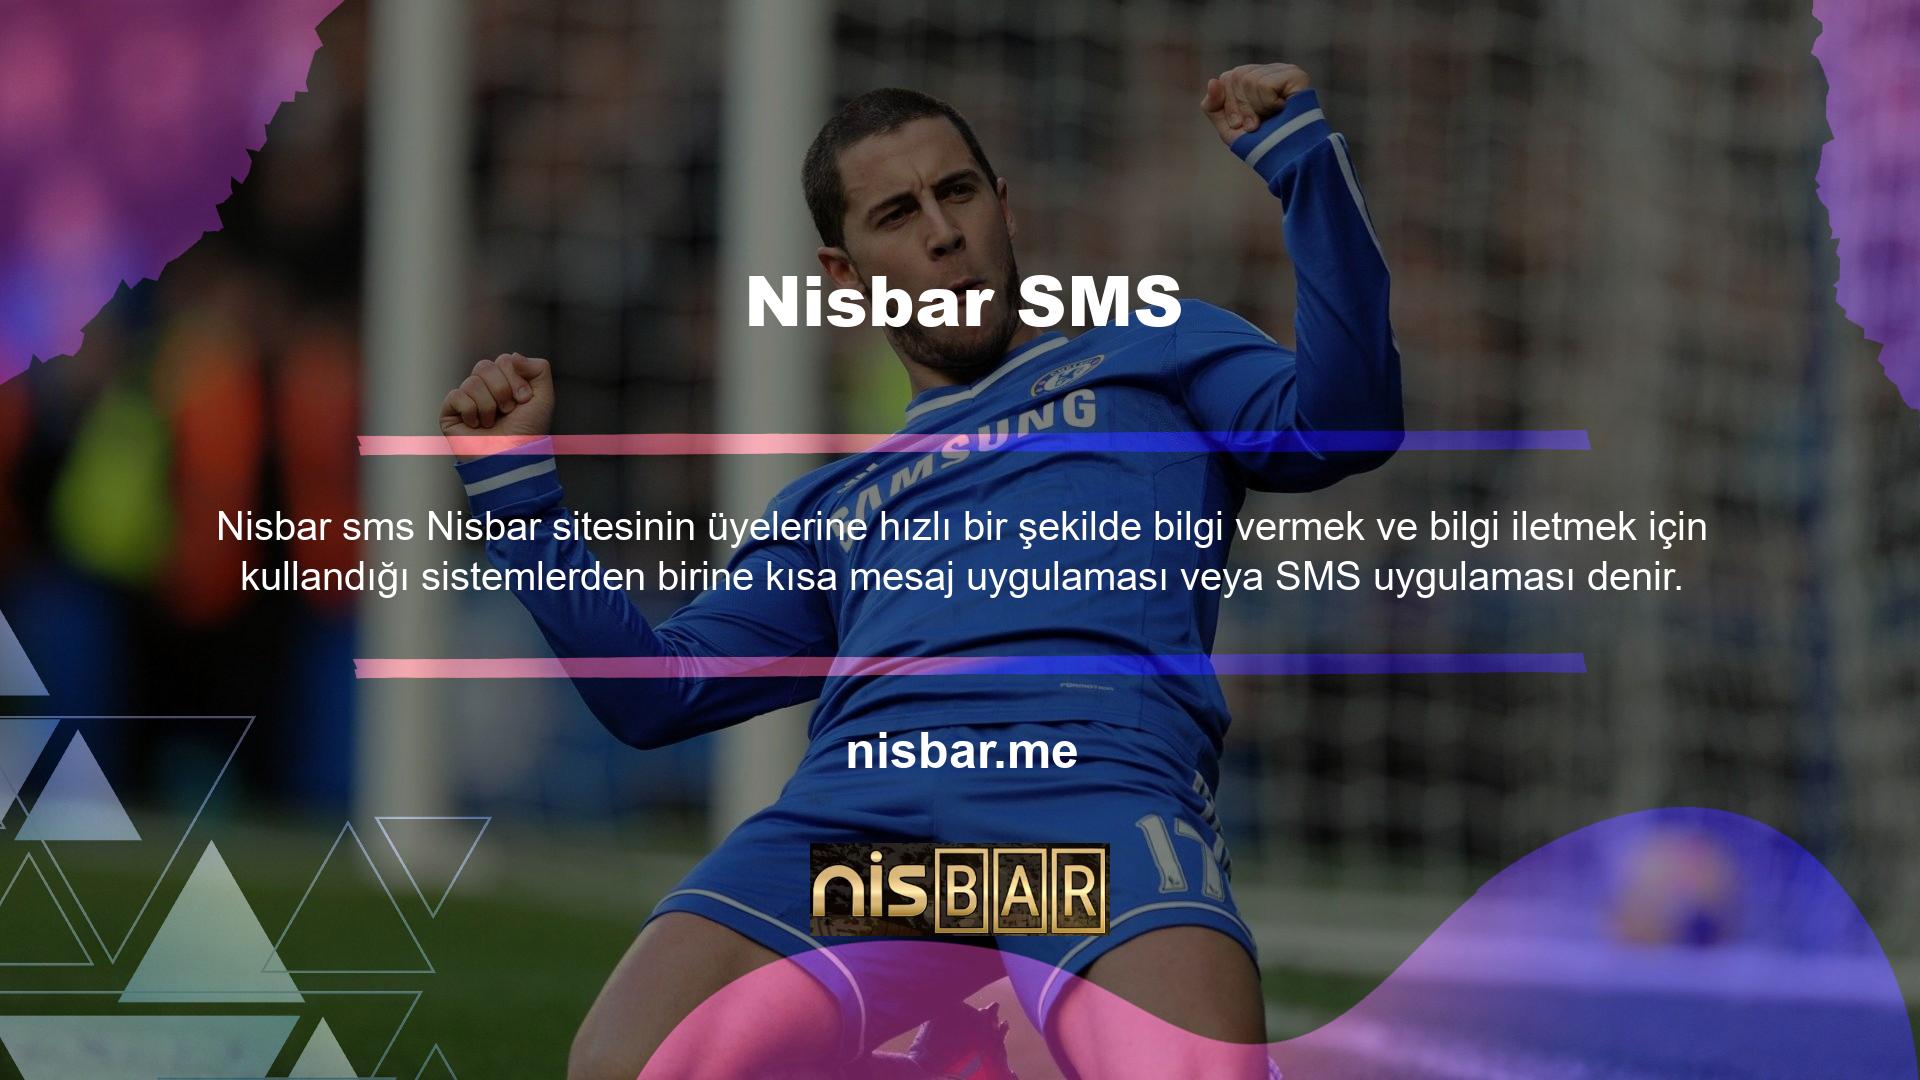 Bu uygulama üyelik süresi boyunca verilen cep telefonunun ve Nisbar SMS'in kullanılması esasına dayanmaktadır